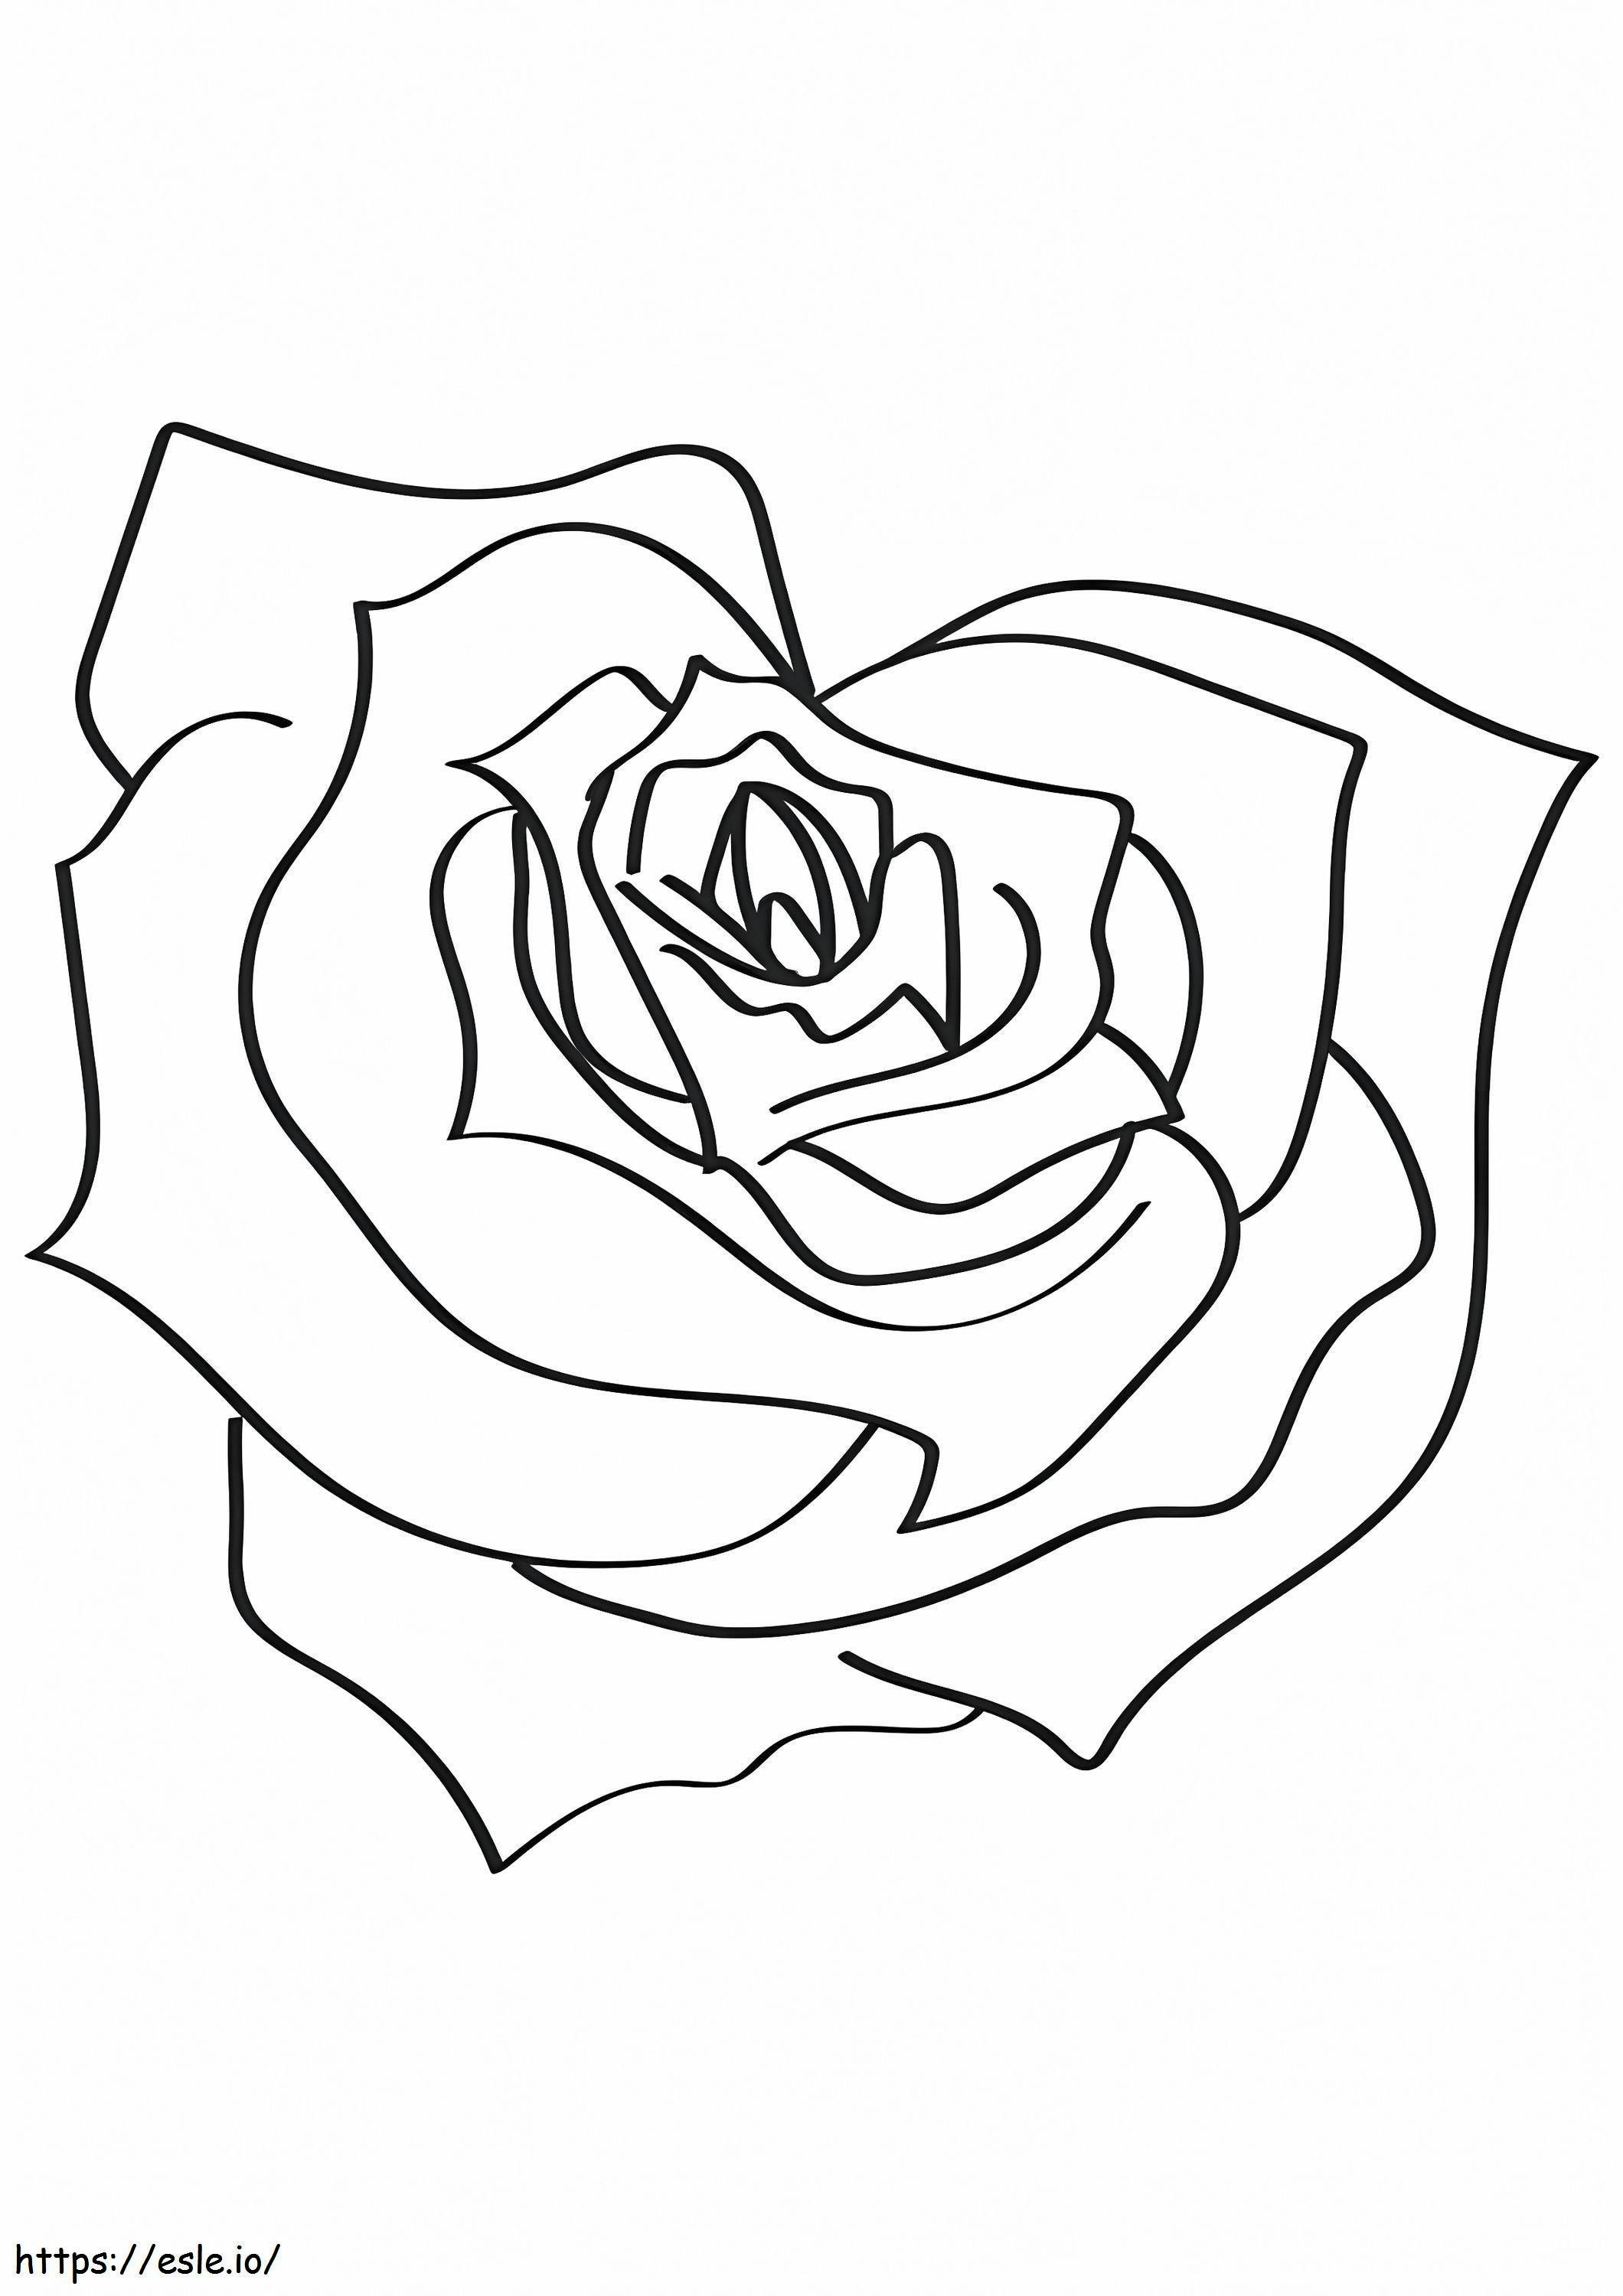 Trandafirul în formă de inimă de colorat